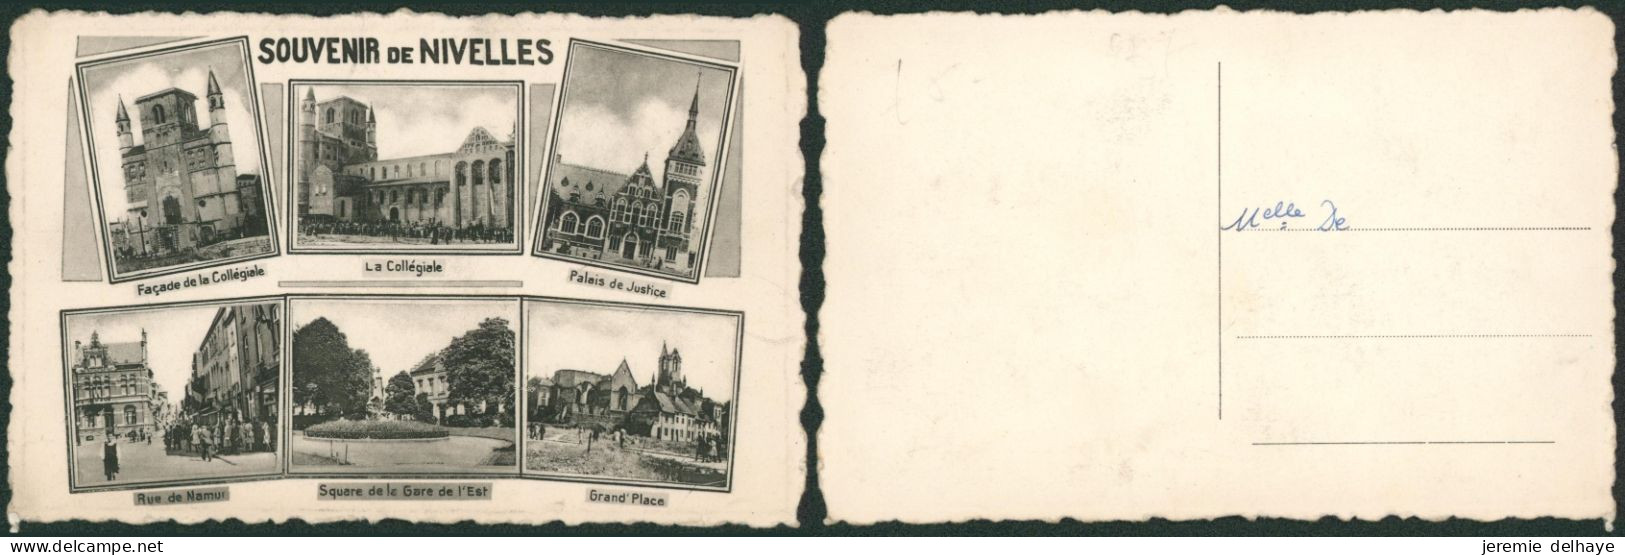 Carte Postale - Souvenir De Nivelles - Nivelles